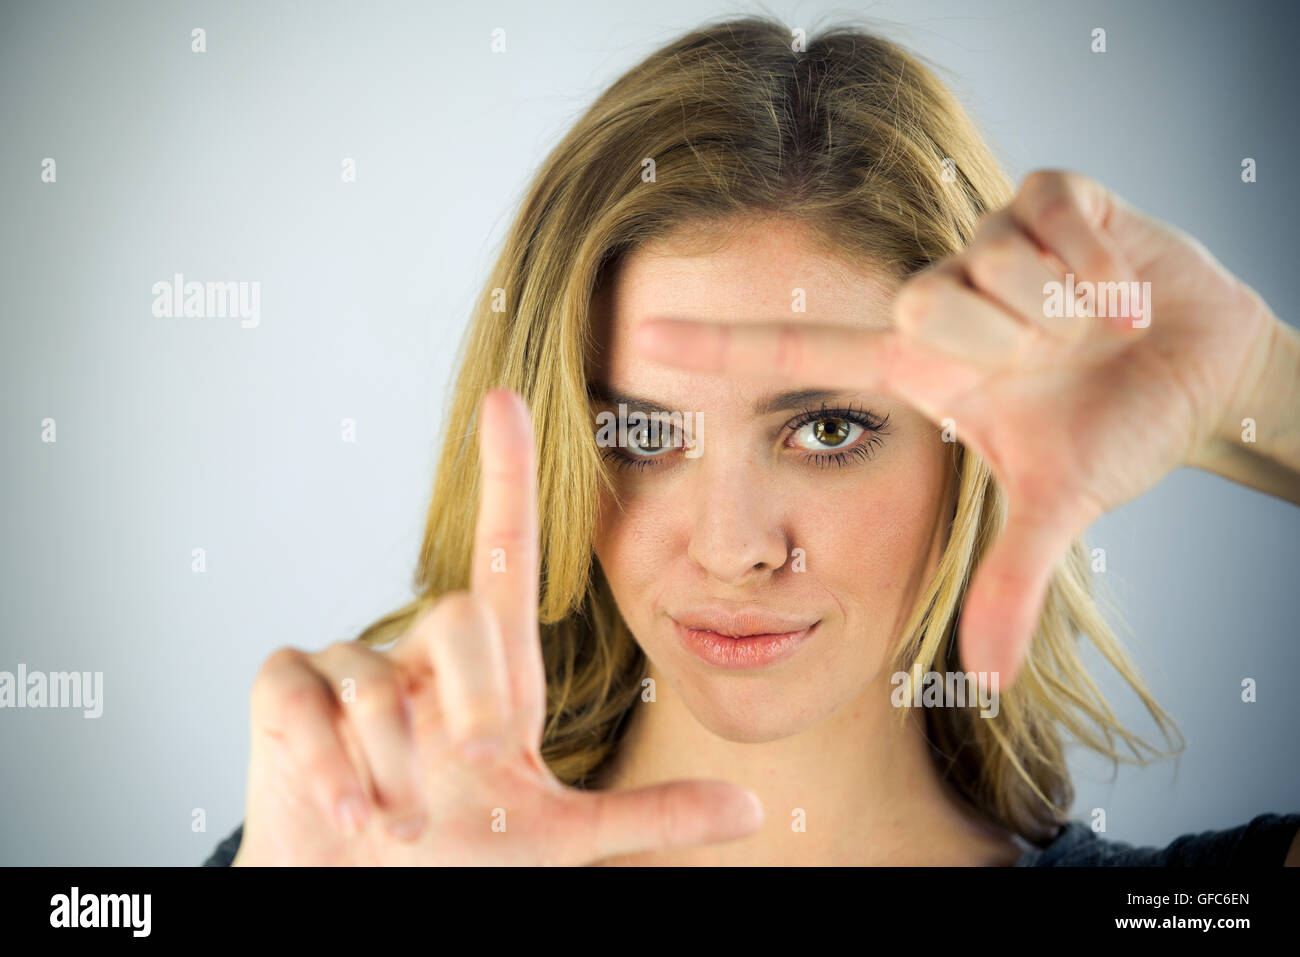 Modèle féminin jolie femme sur fond plein avec copie espace encadrement photo geste Banque D'Images